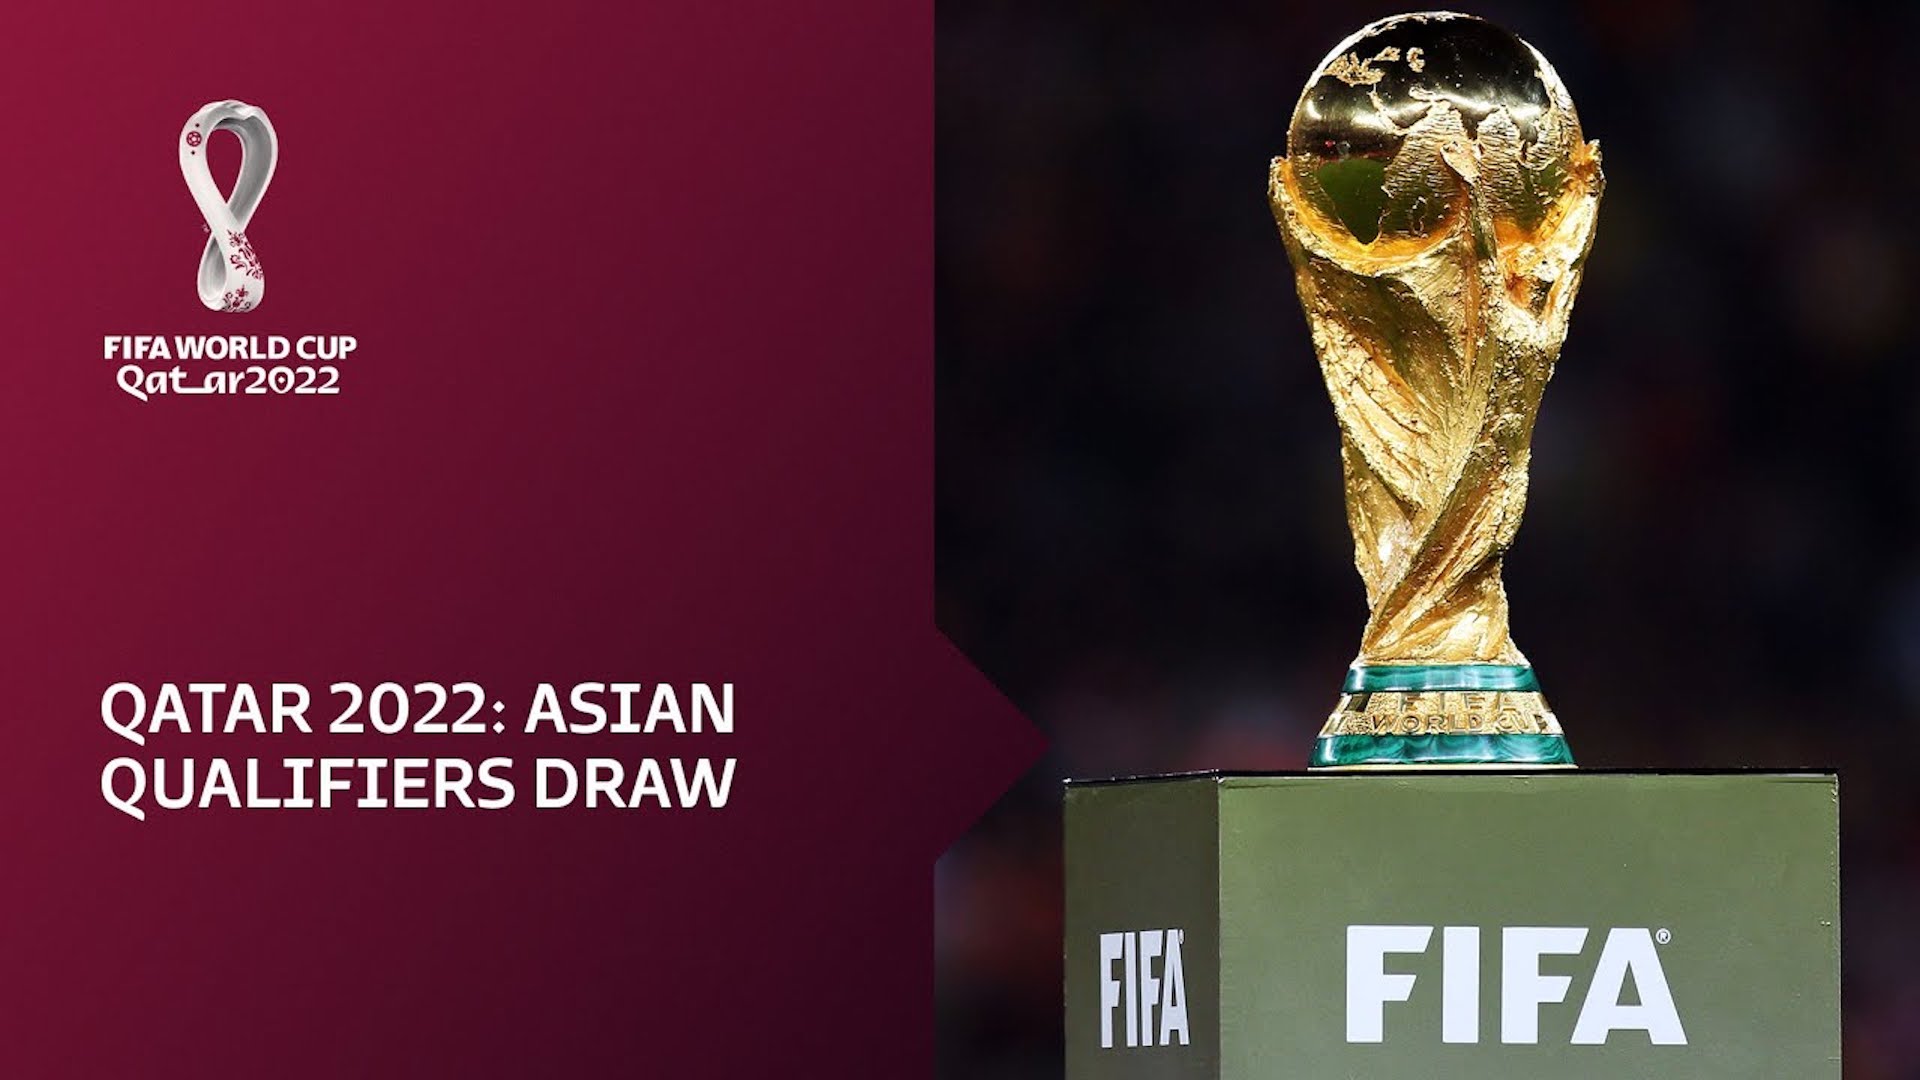 تصفيات كأس العالم 2022 آسيا المرحلة الثالثة